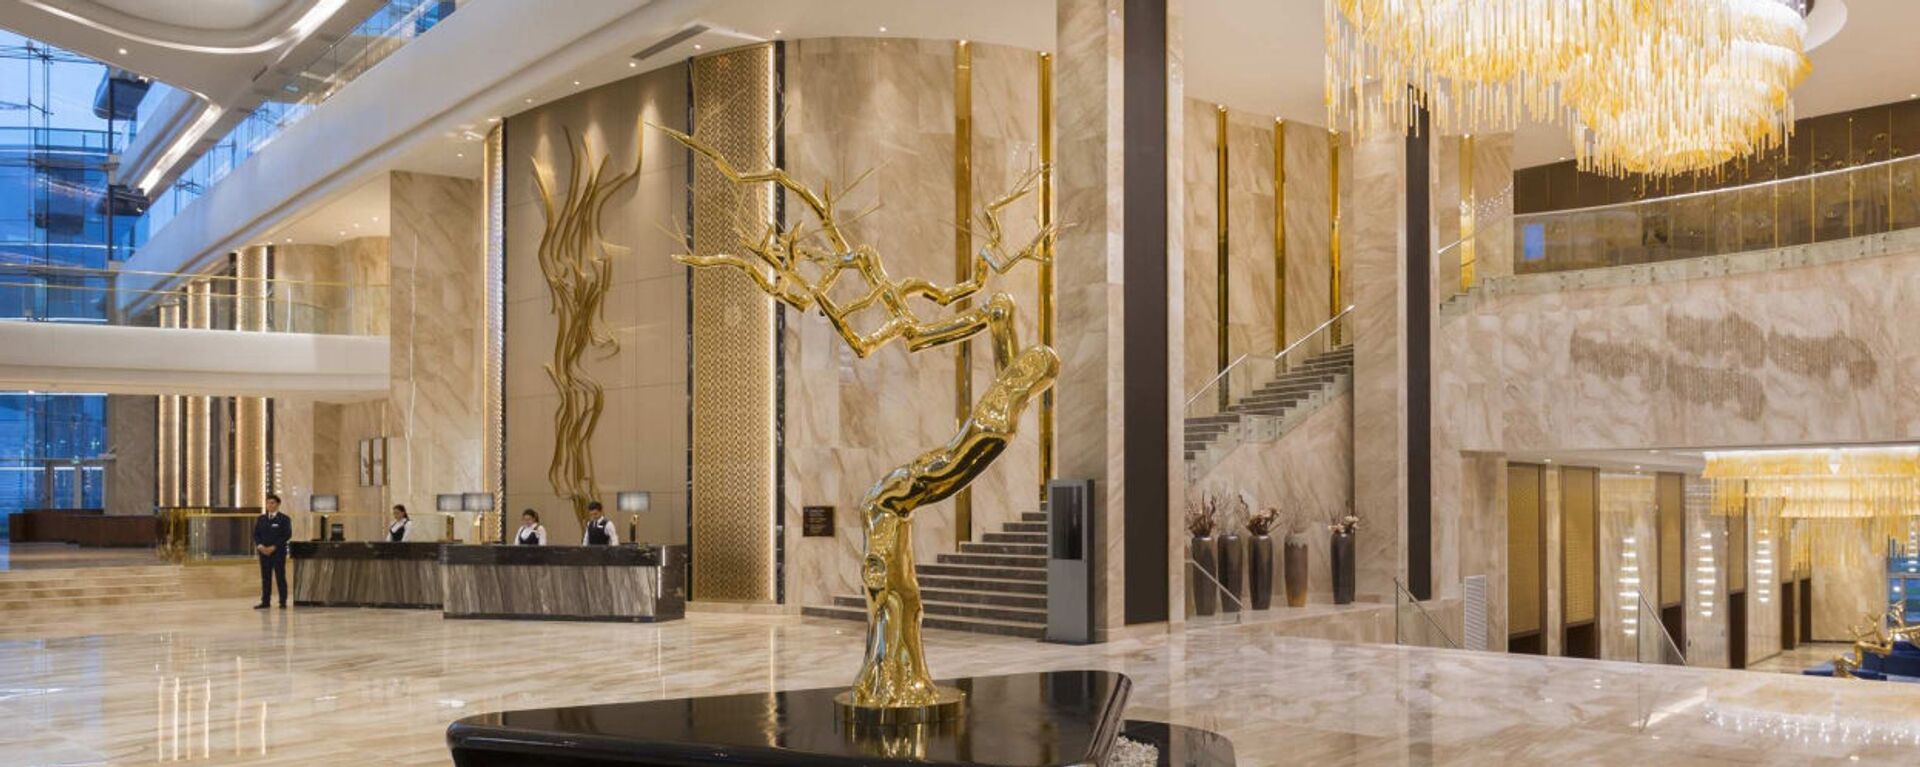 Hilton Astana - ультрасовременный отель на территории футуристичного выставочного комплекса ЭКСПО-2017 - Sputnik Казахстан, 1920, 08.08.2022